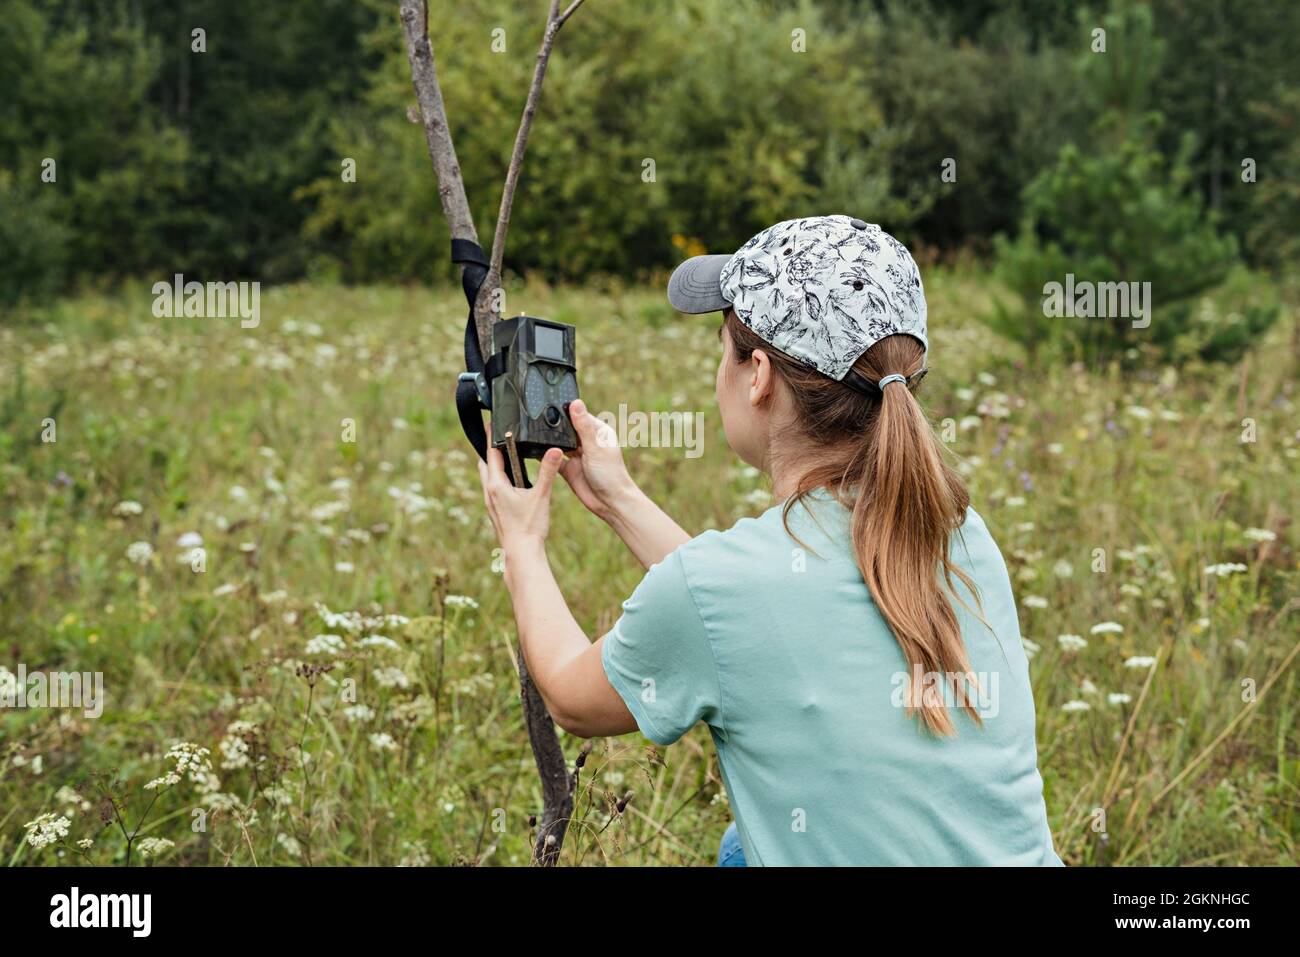 Junge Frau Wissenschaftler Biologe Zoologe stellt Kamera Falle für die Beobachtung von wilden Tieren im Sommer Taiga Wald zu sammeln wissenschaftliche Daten Umwelt Stockfoto